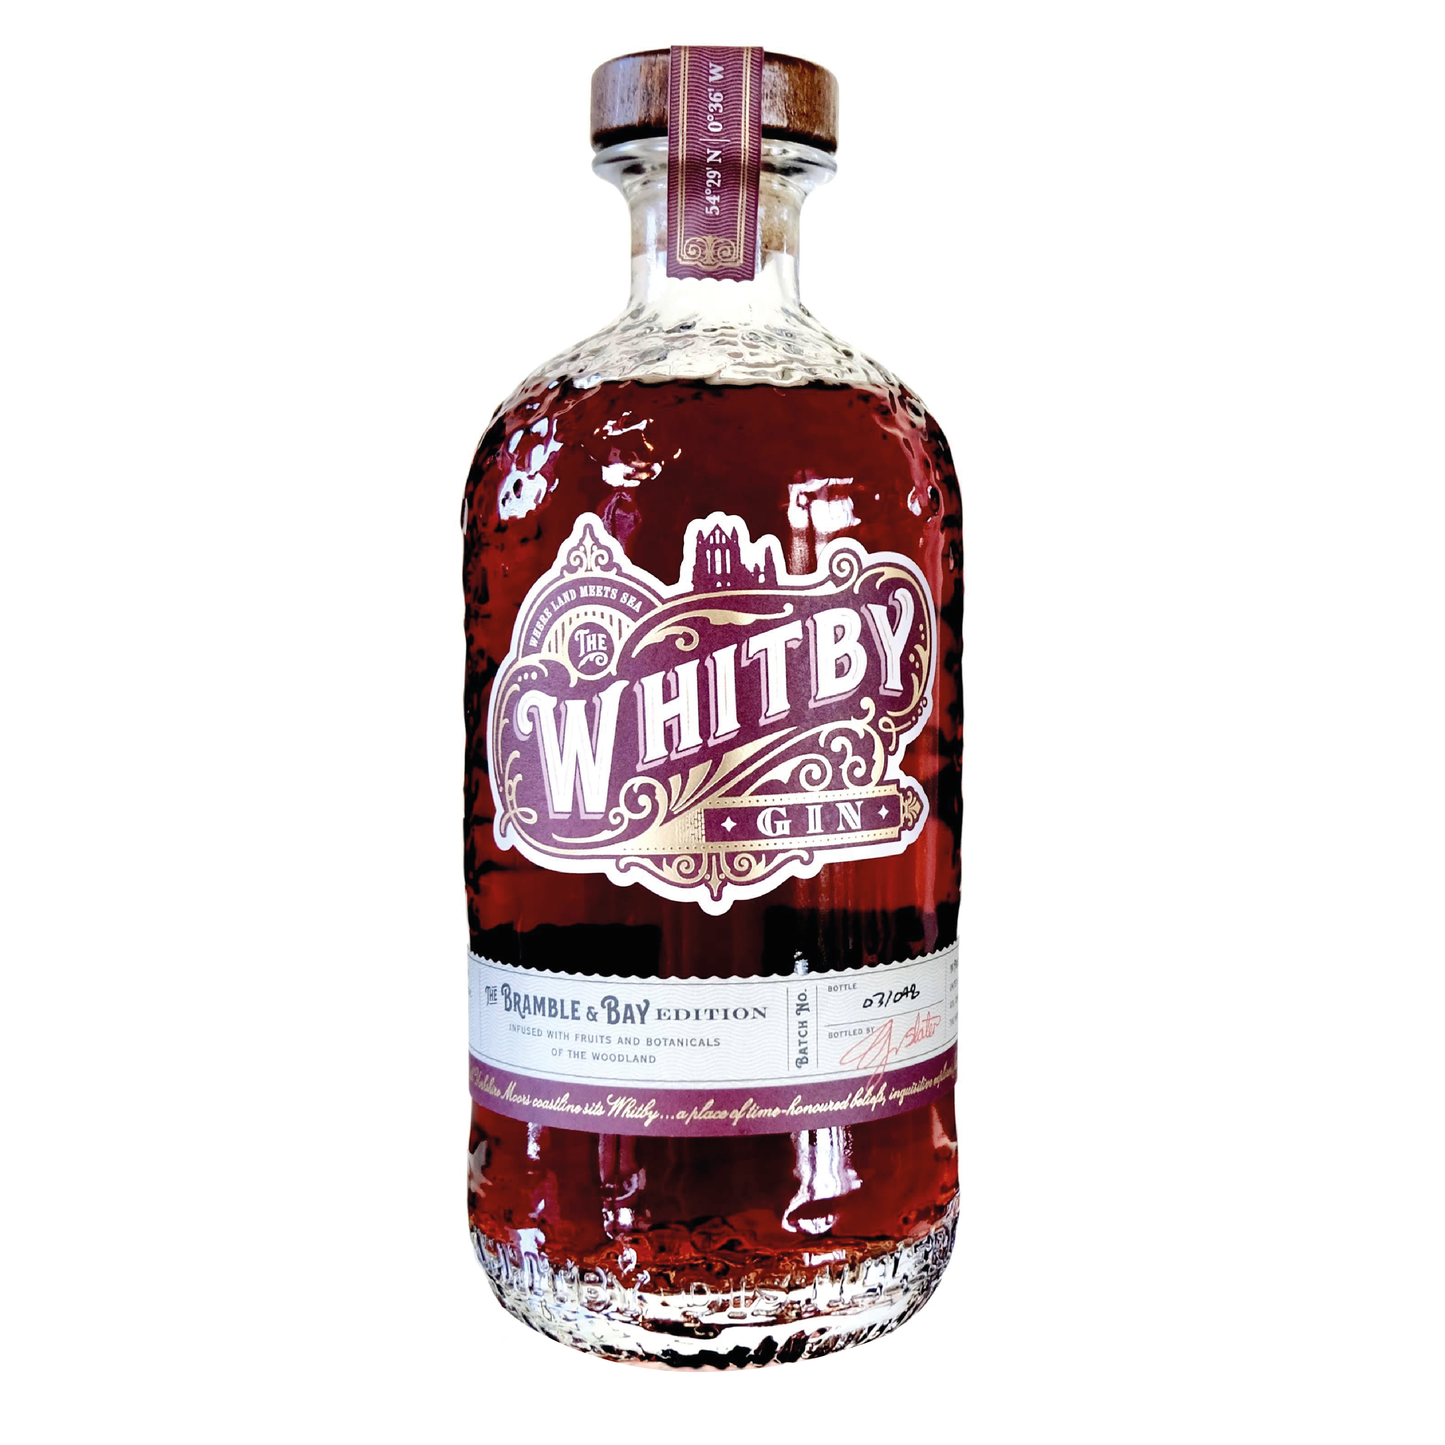 Whitby Gin - Bramble & Bay